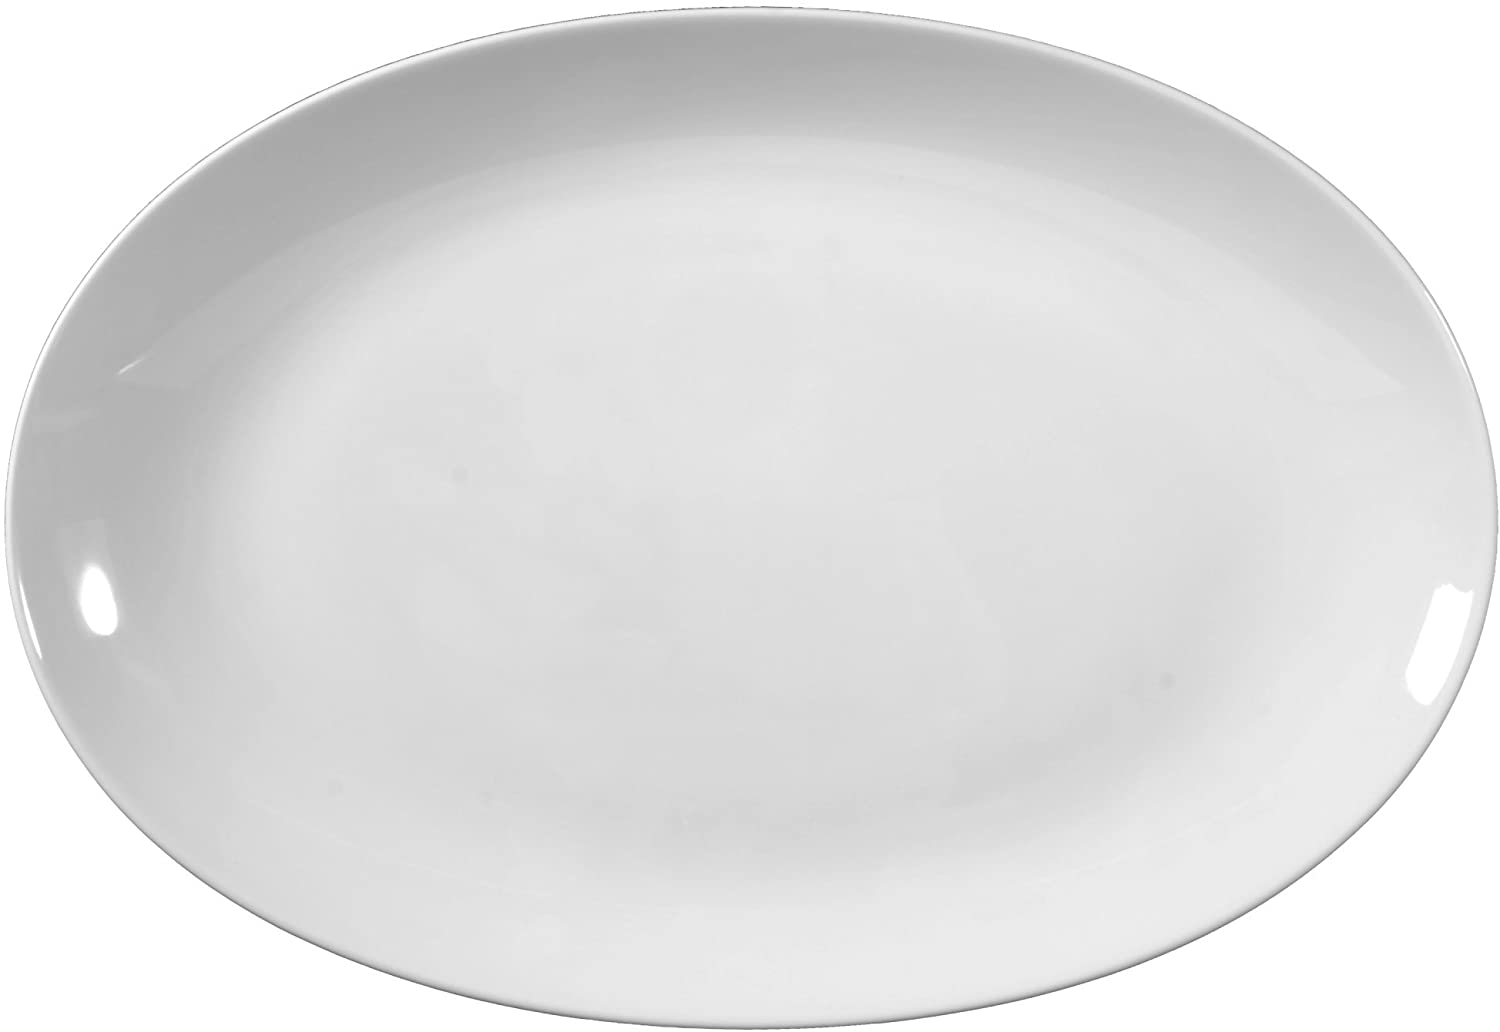 Seltmann Weiden Lido 0003 Oval Plate 38 cm White Plain